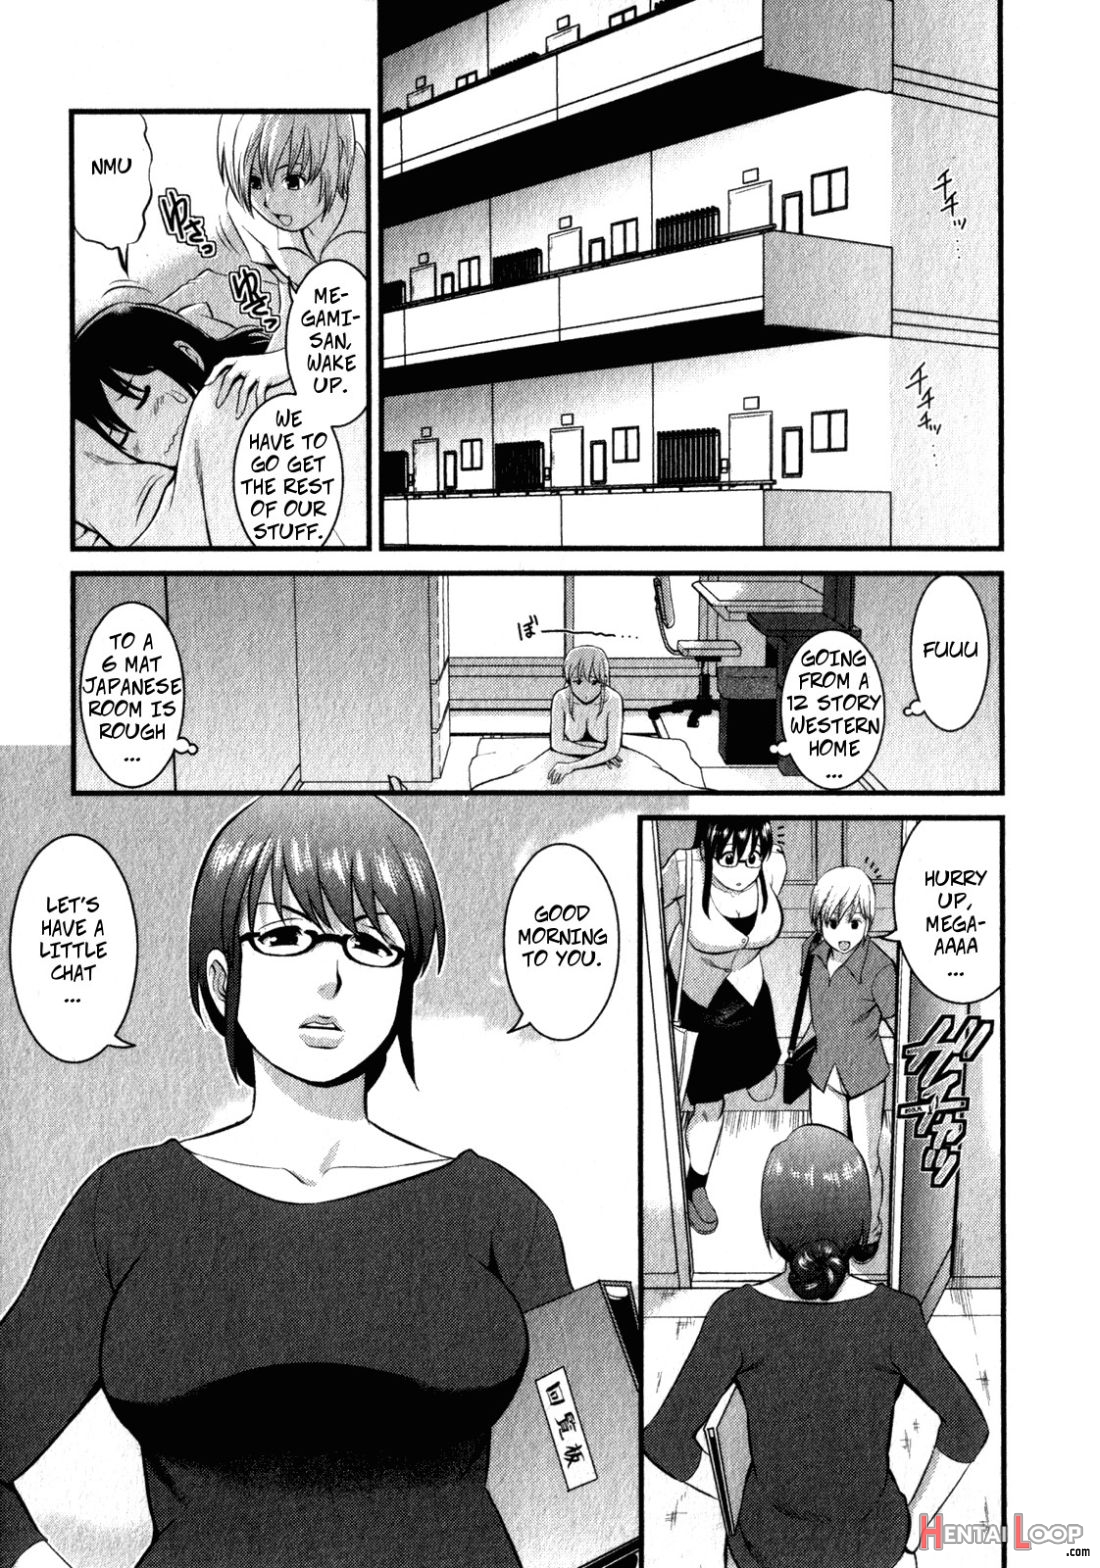 Shizuko-san's Story page 1